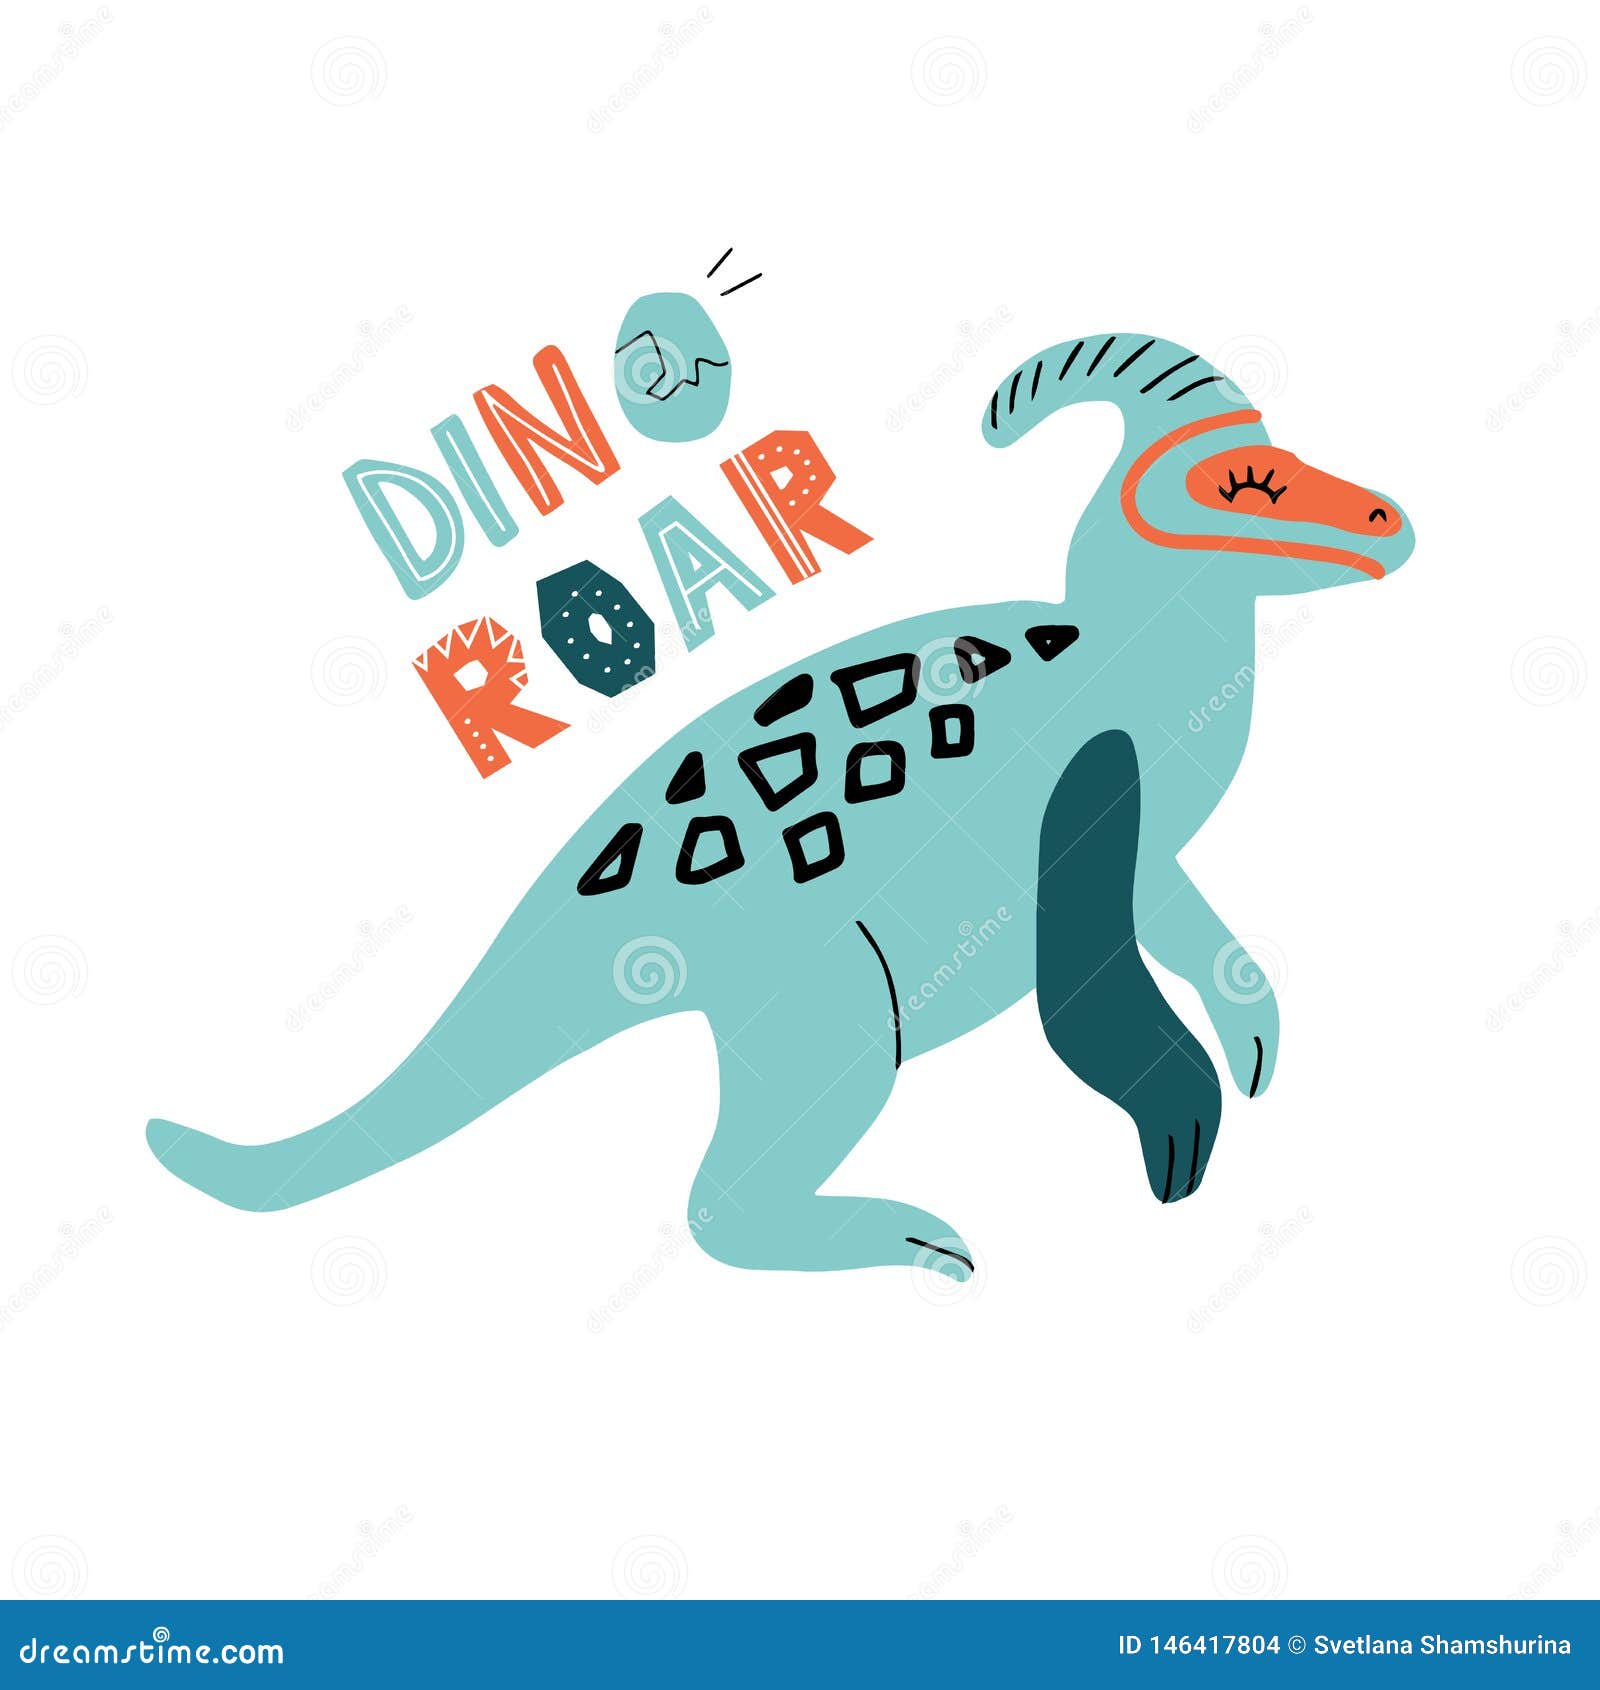 Rugido de Dinossauro, Dino Notícias